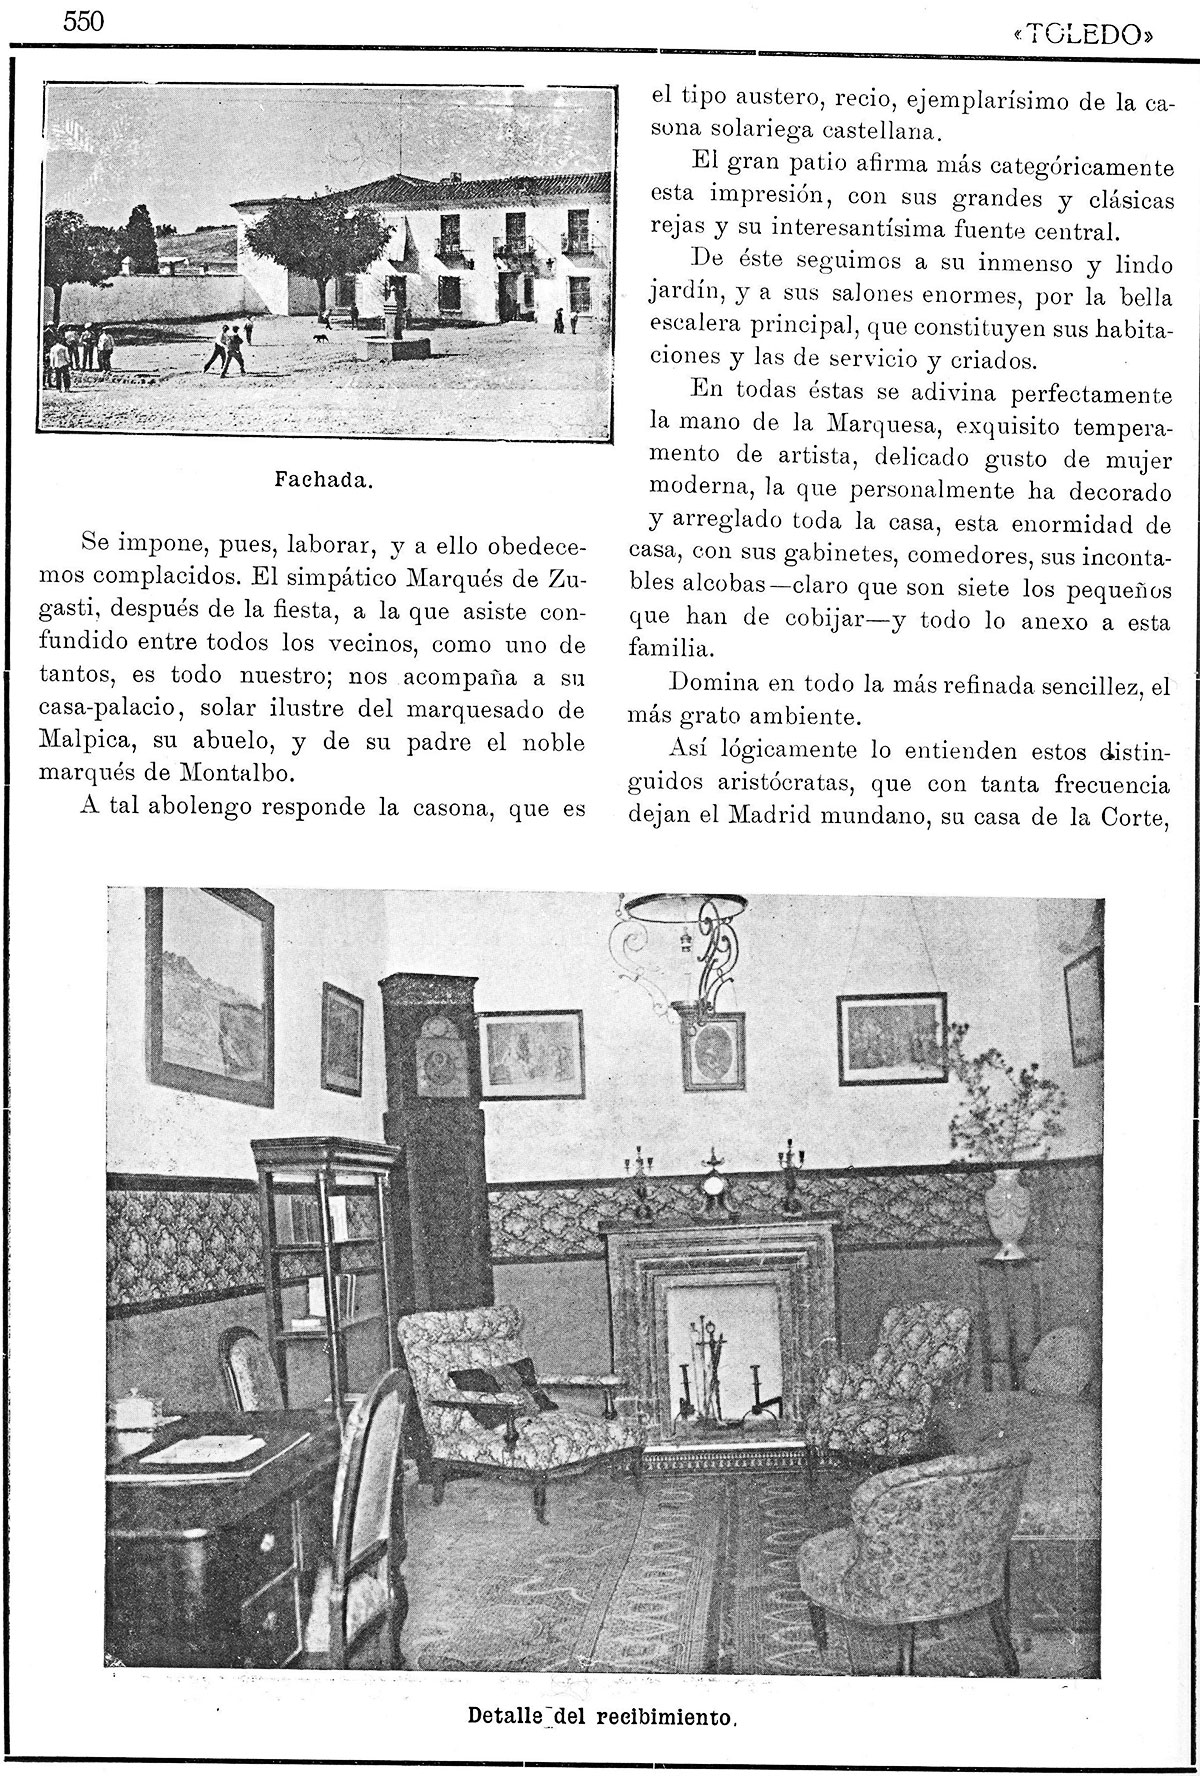 La casa-palacio de San Martín de Pusa. Revista de Arte, 1/1/1923